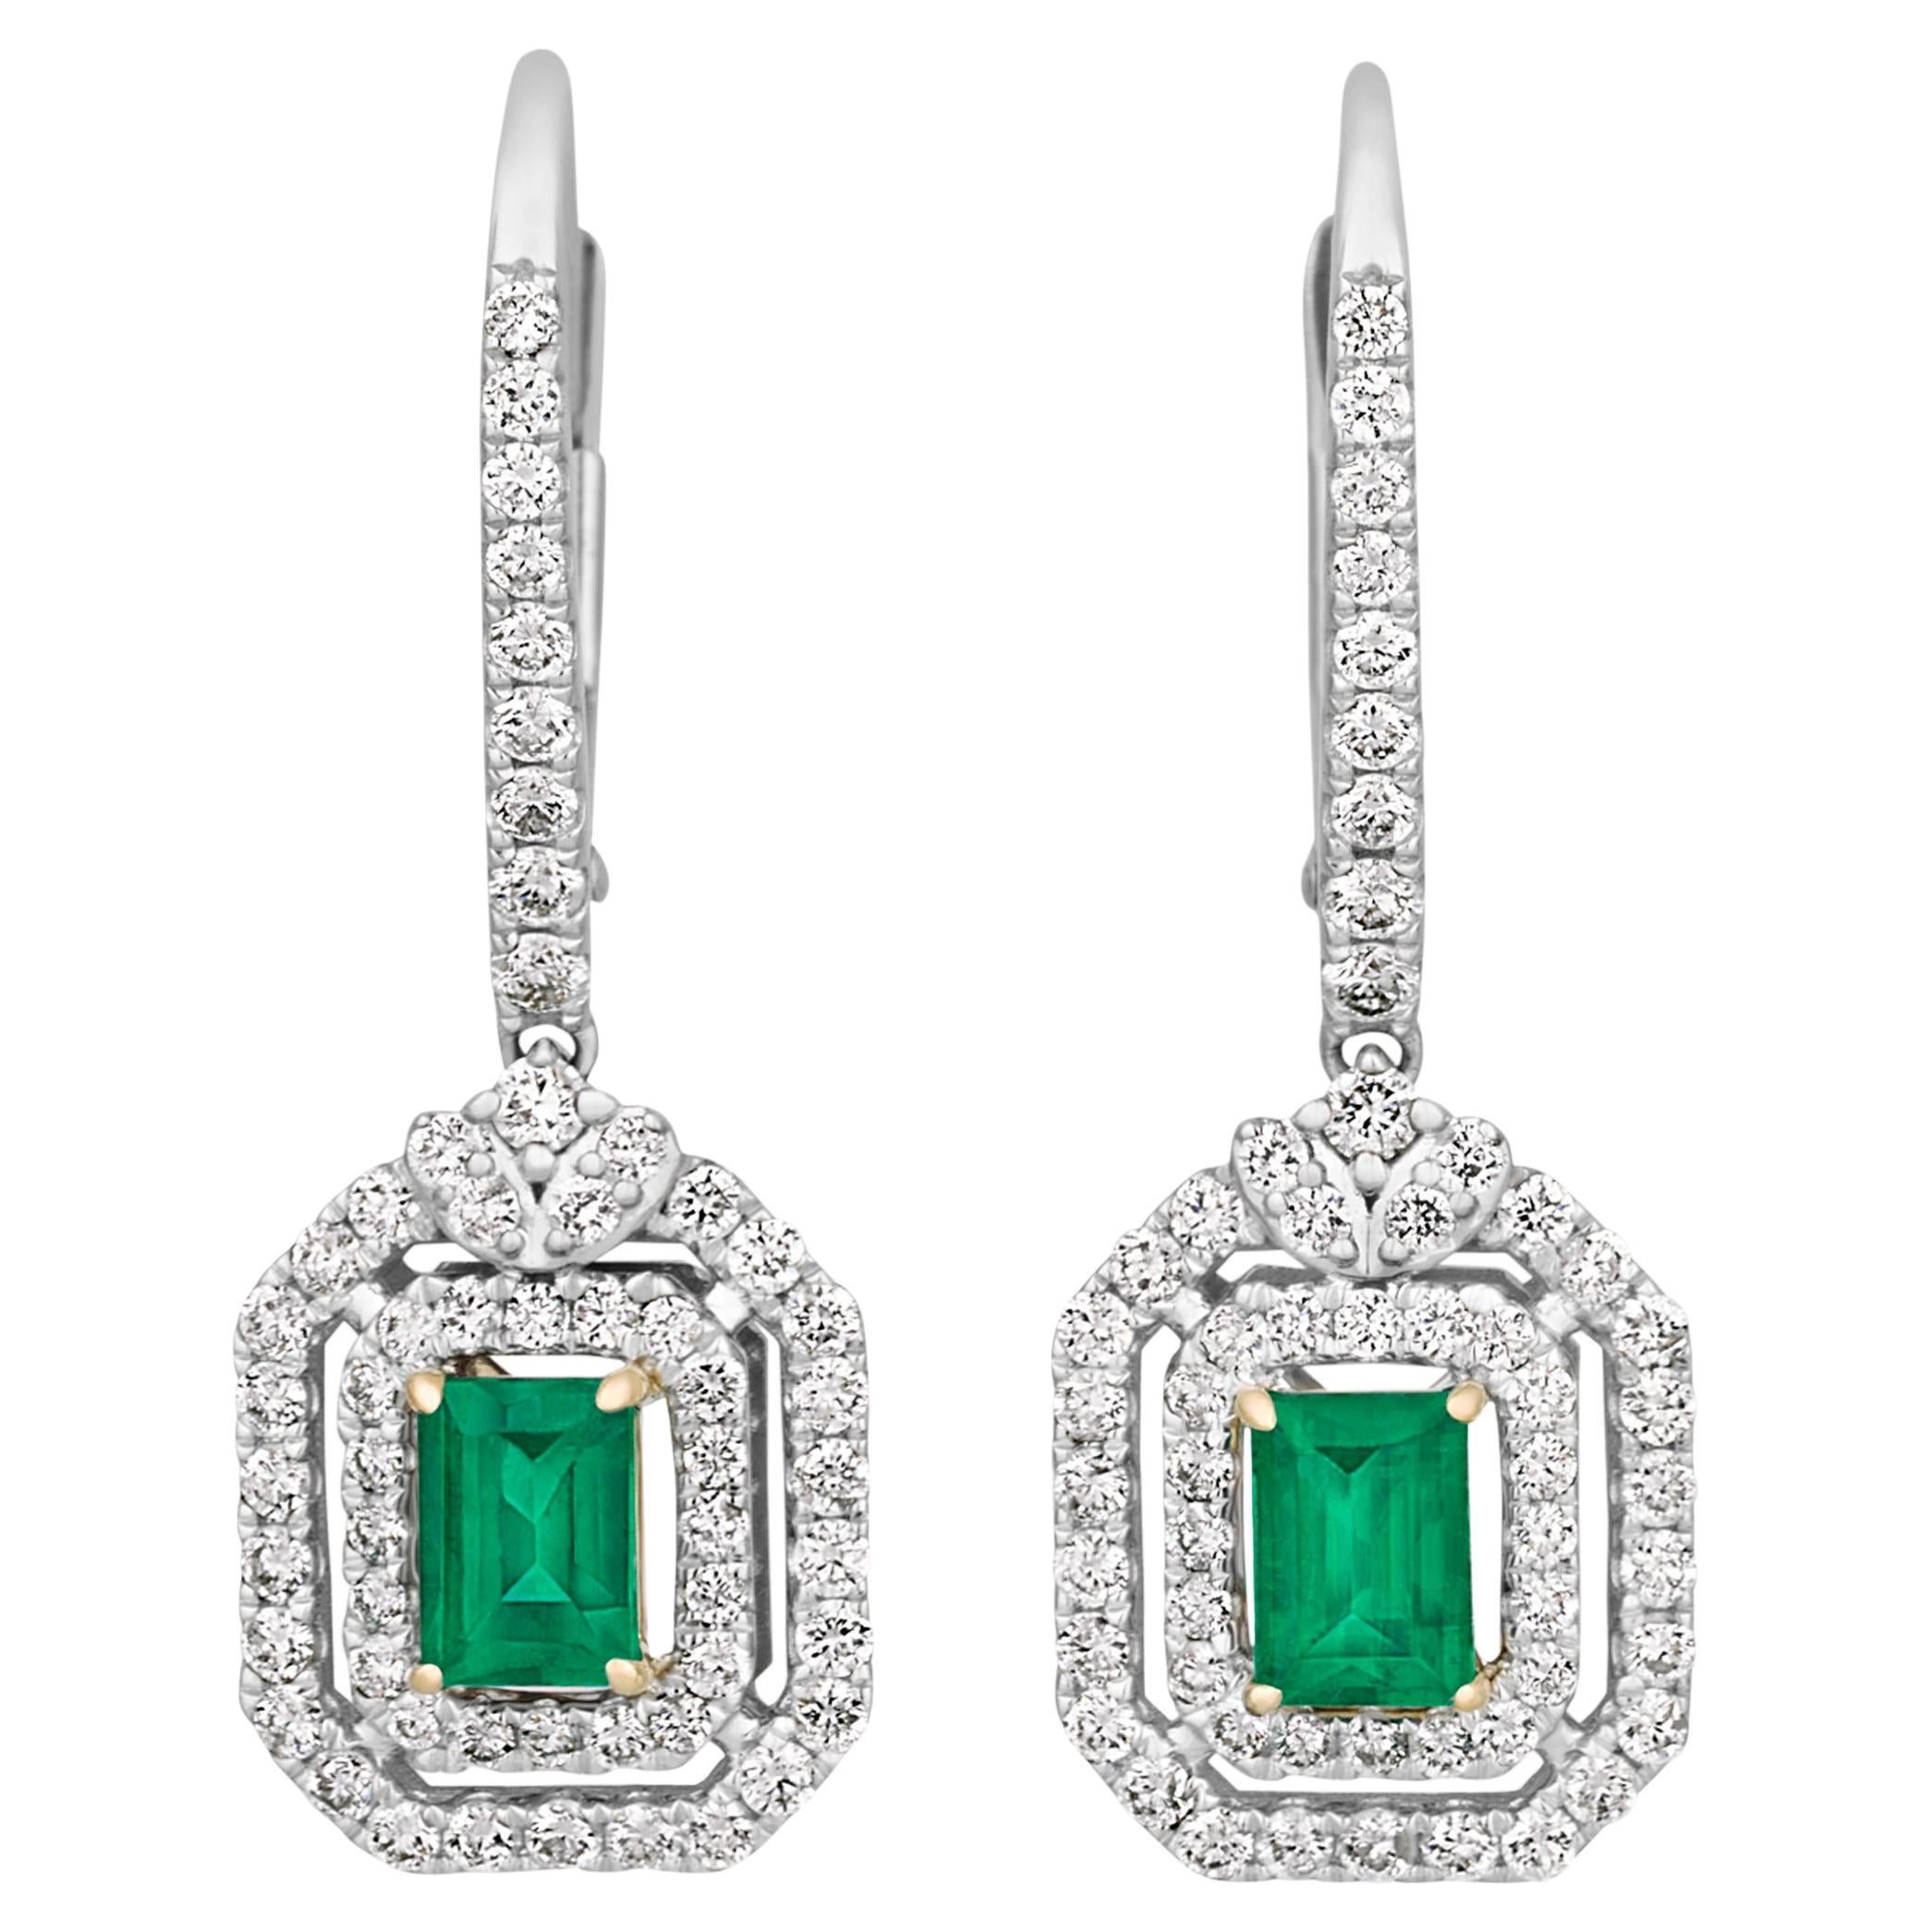 Colombian Emerald Earrings, 0.74 Carats